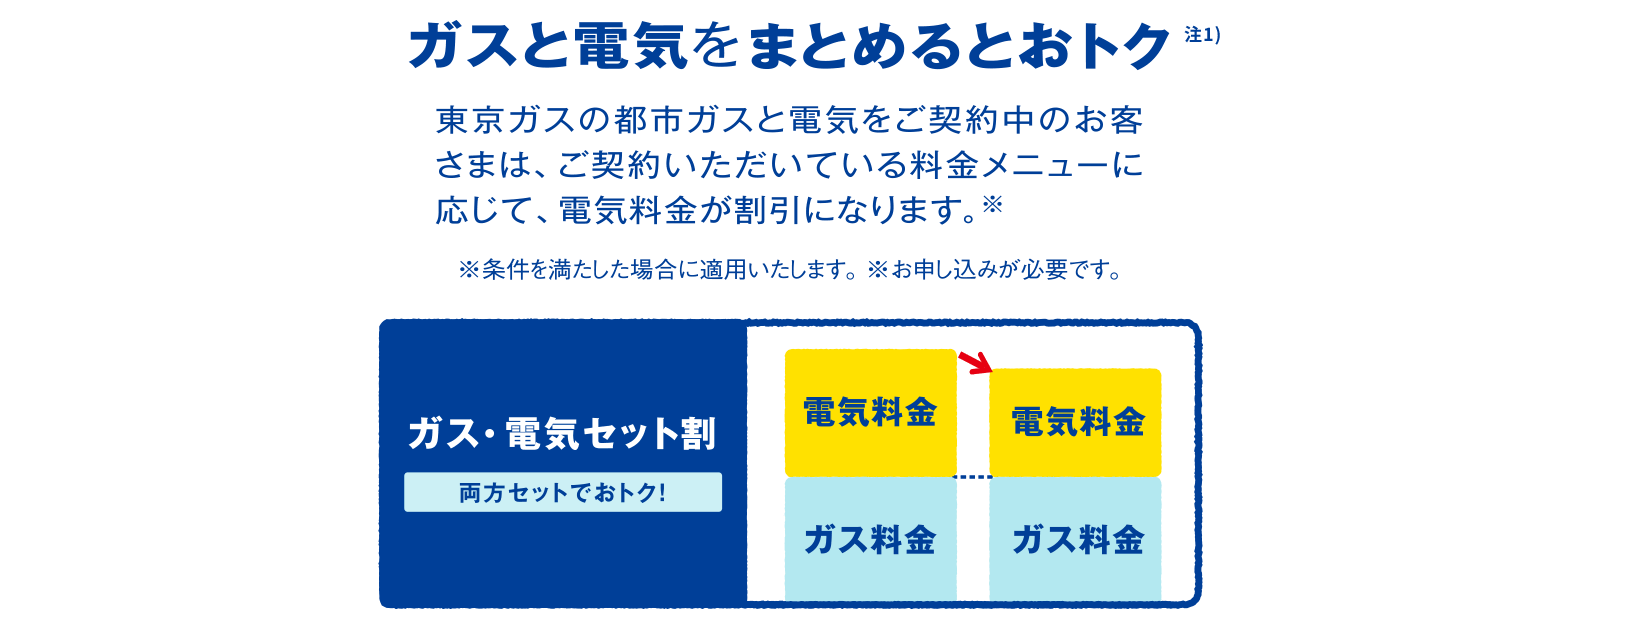 ガスと電気をまとめるとおトク注1)　東京ガスの都市ガスと電気をご契約中のお客さまは、ご契約いただいている料金メニューに応じて、電気料金が割引になります。